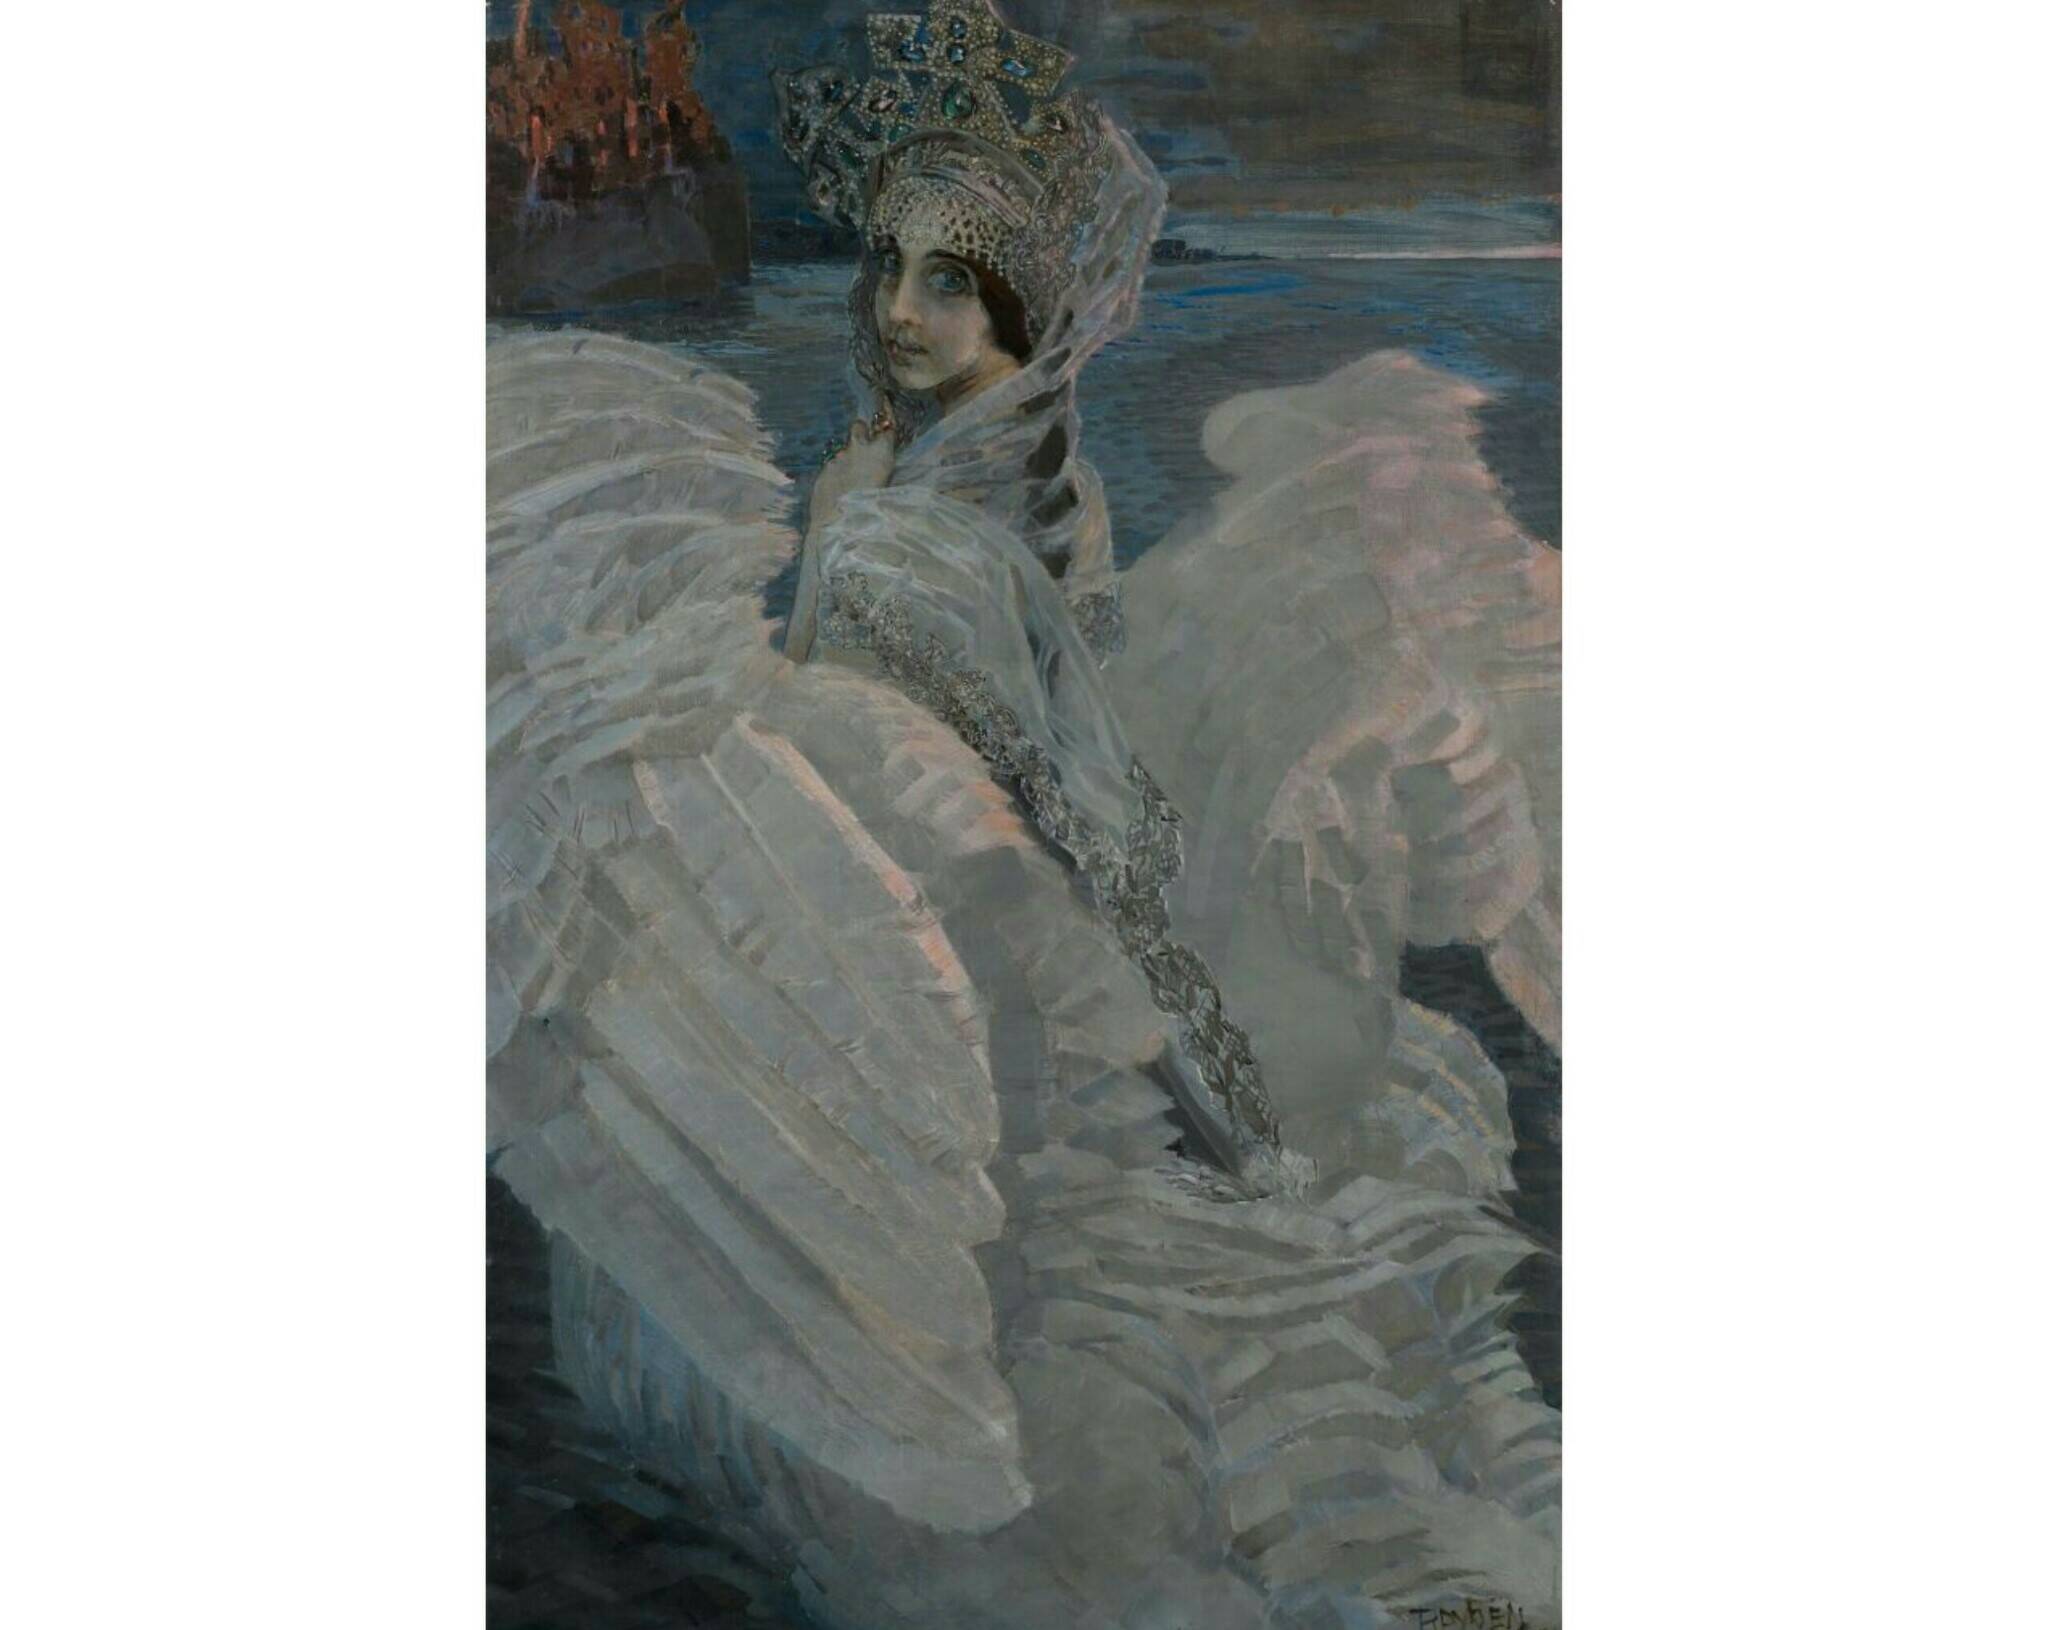 М.А. Врубель «Царевна-Лебедь», 1900 год. Из собрания Третьяковской галереи